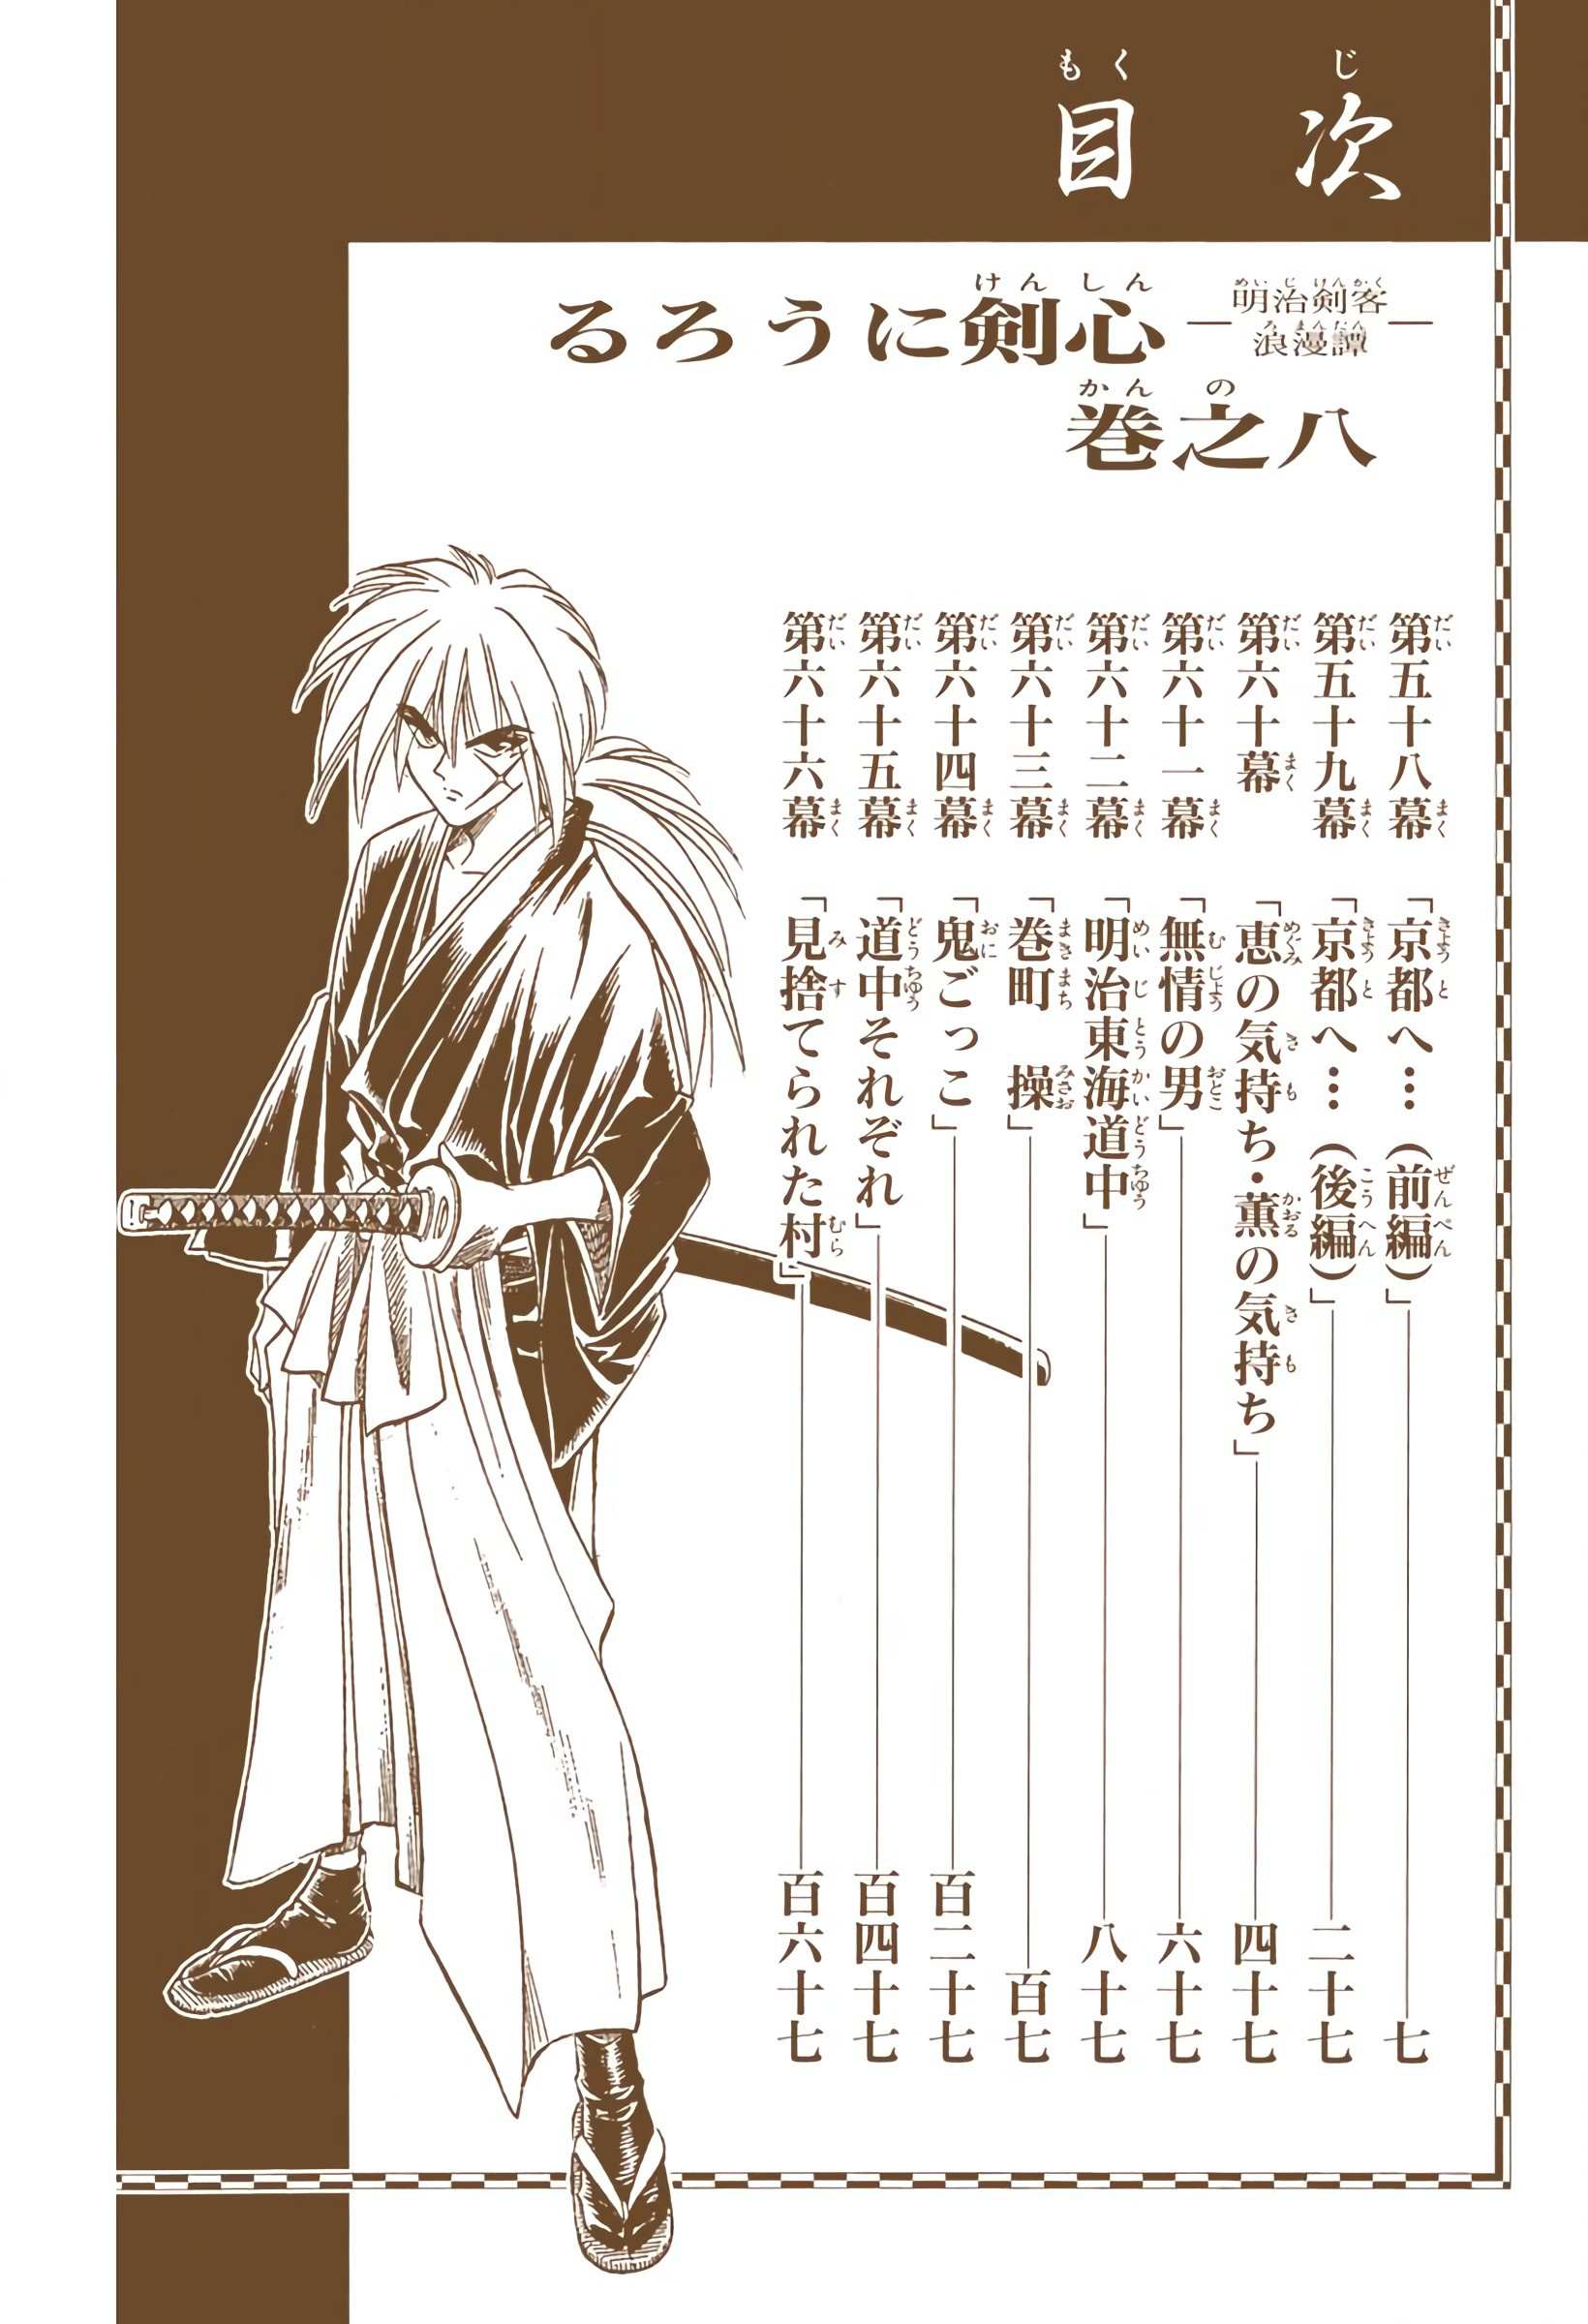 Rurouni Kenshin: Meiji Kenkaku Romantan - Digital Colored - chapter 58 - #6